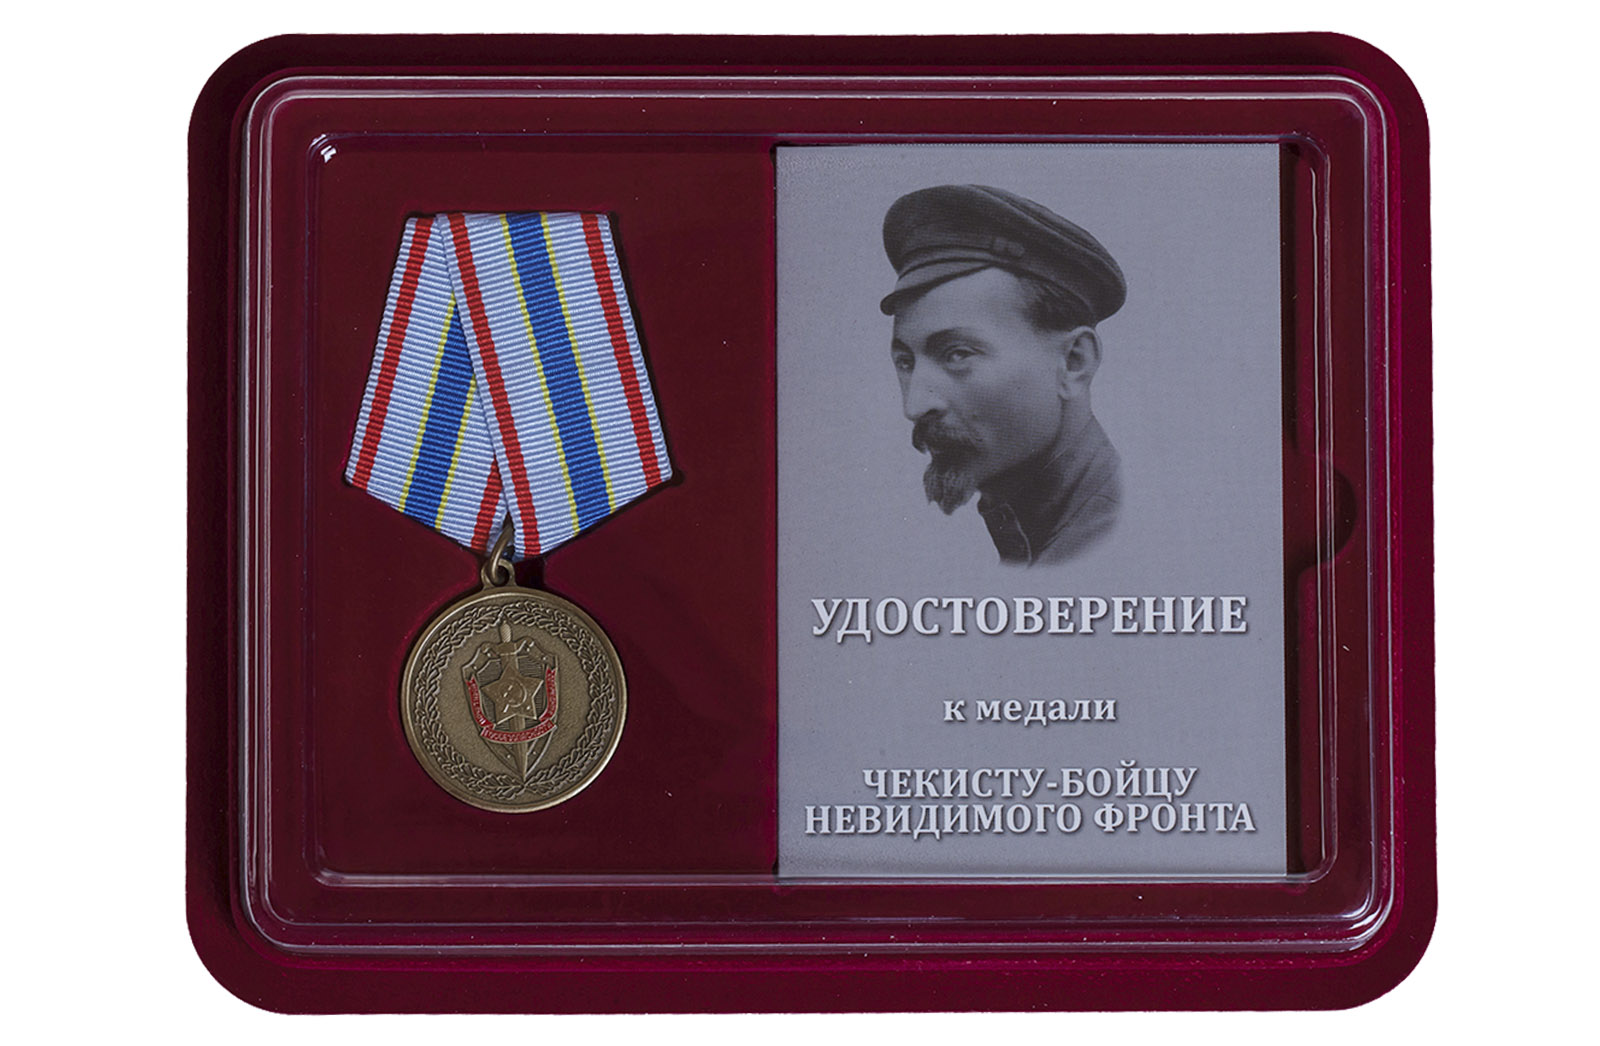 Купить общественную медаль ФСБ Чекисту-бойцу невидимого фронта в подарок